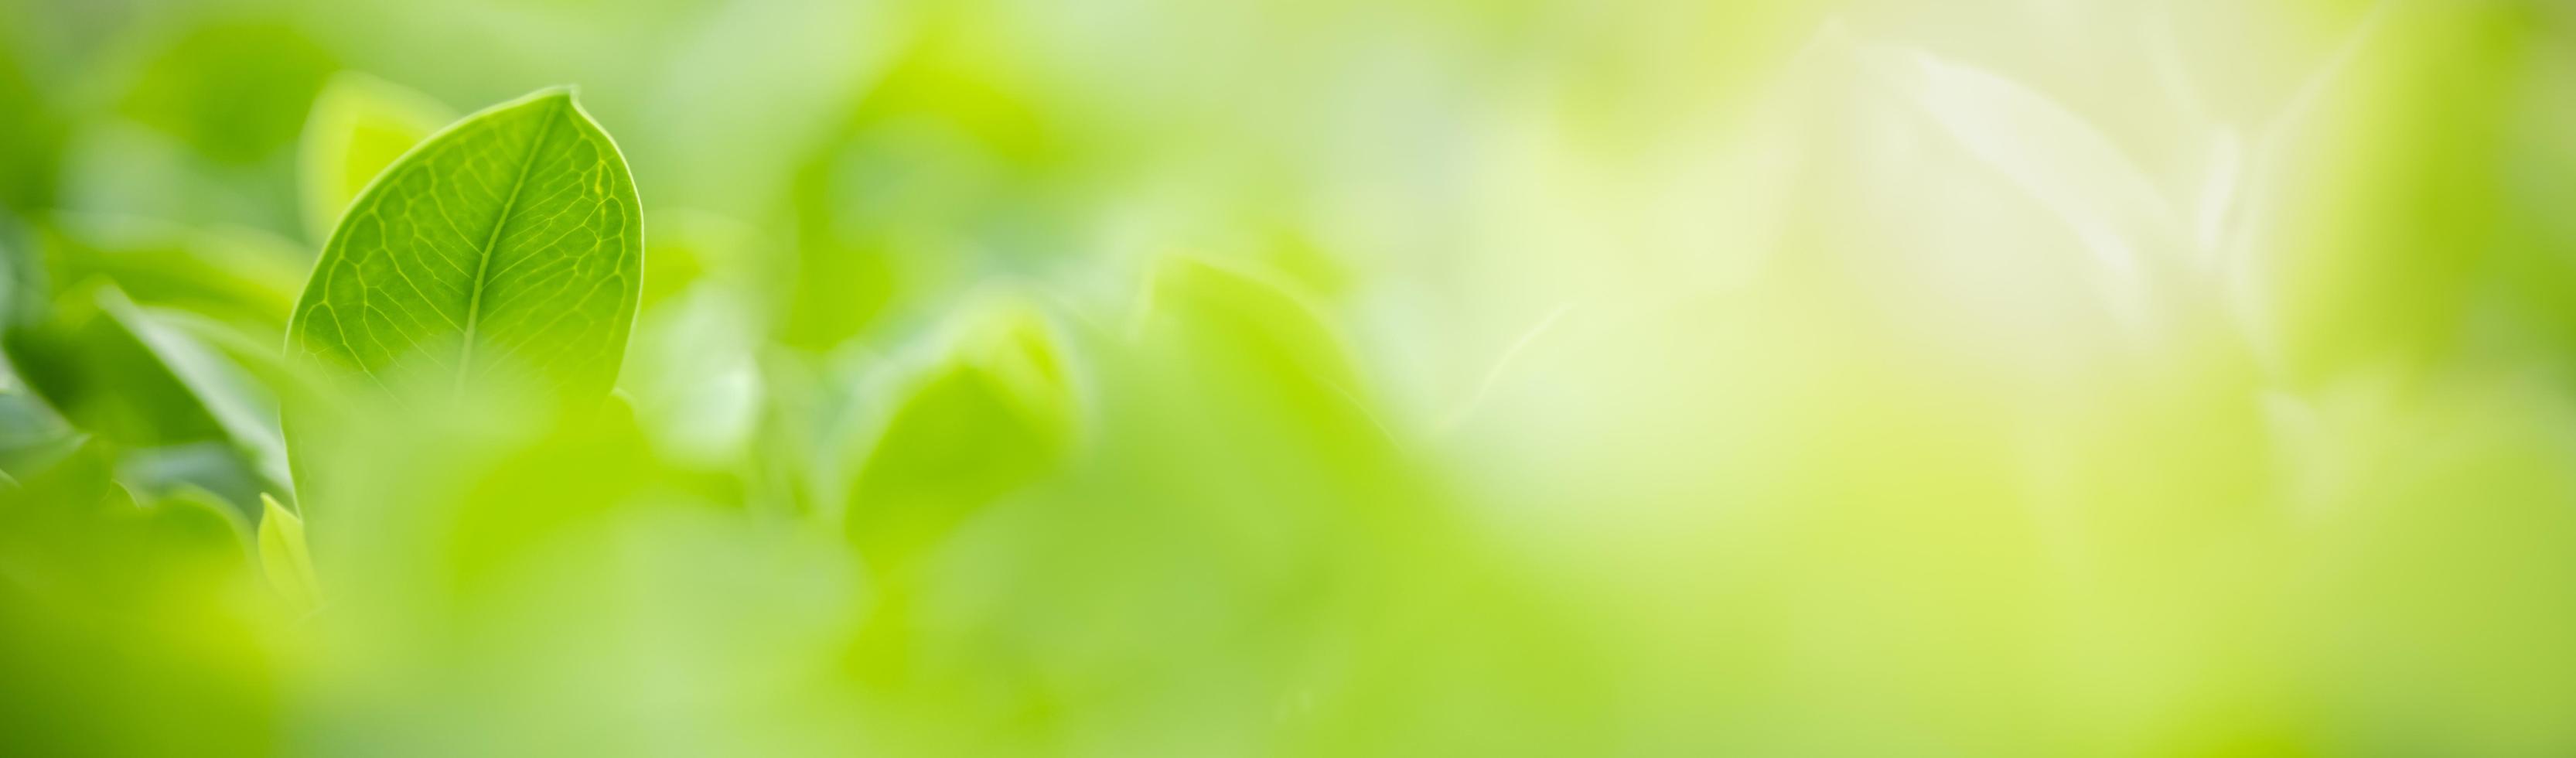 primer plano de la vista de la naturaleza hoja verde sobre fondo verde borroso bajo la luz del sol con bokeh y espacio de copia utilizando como fondo el paisaje de plantas naturales, concepto de cubierta ecológica. foto